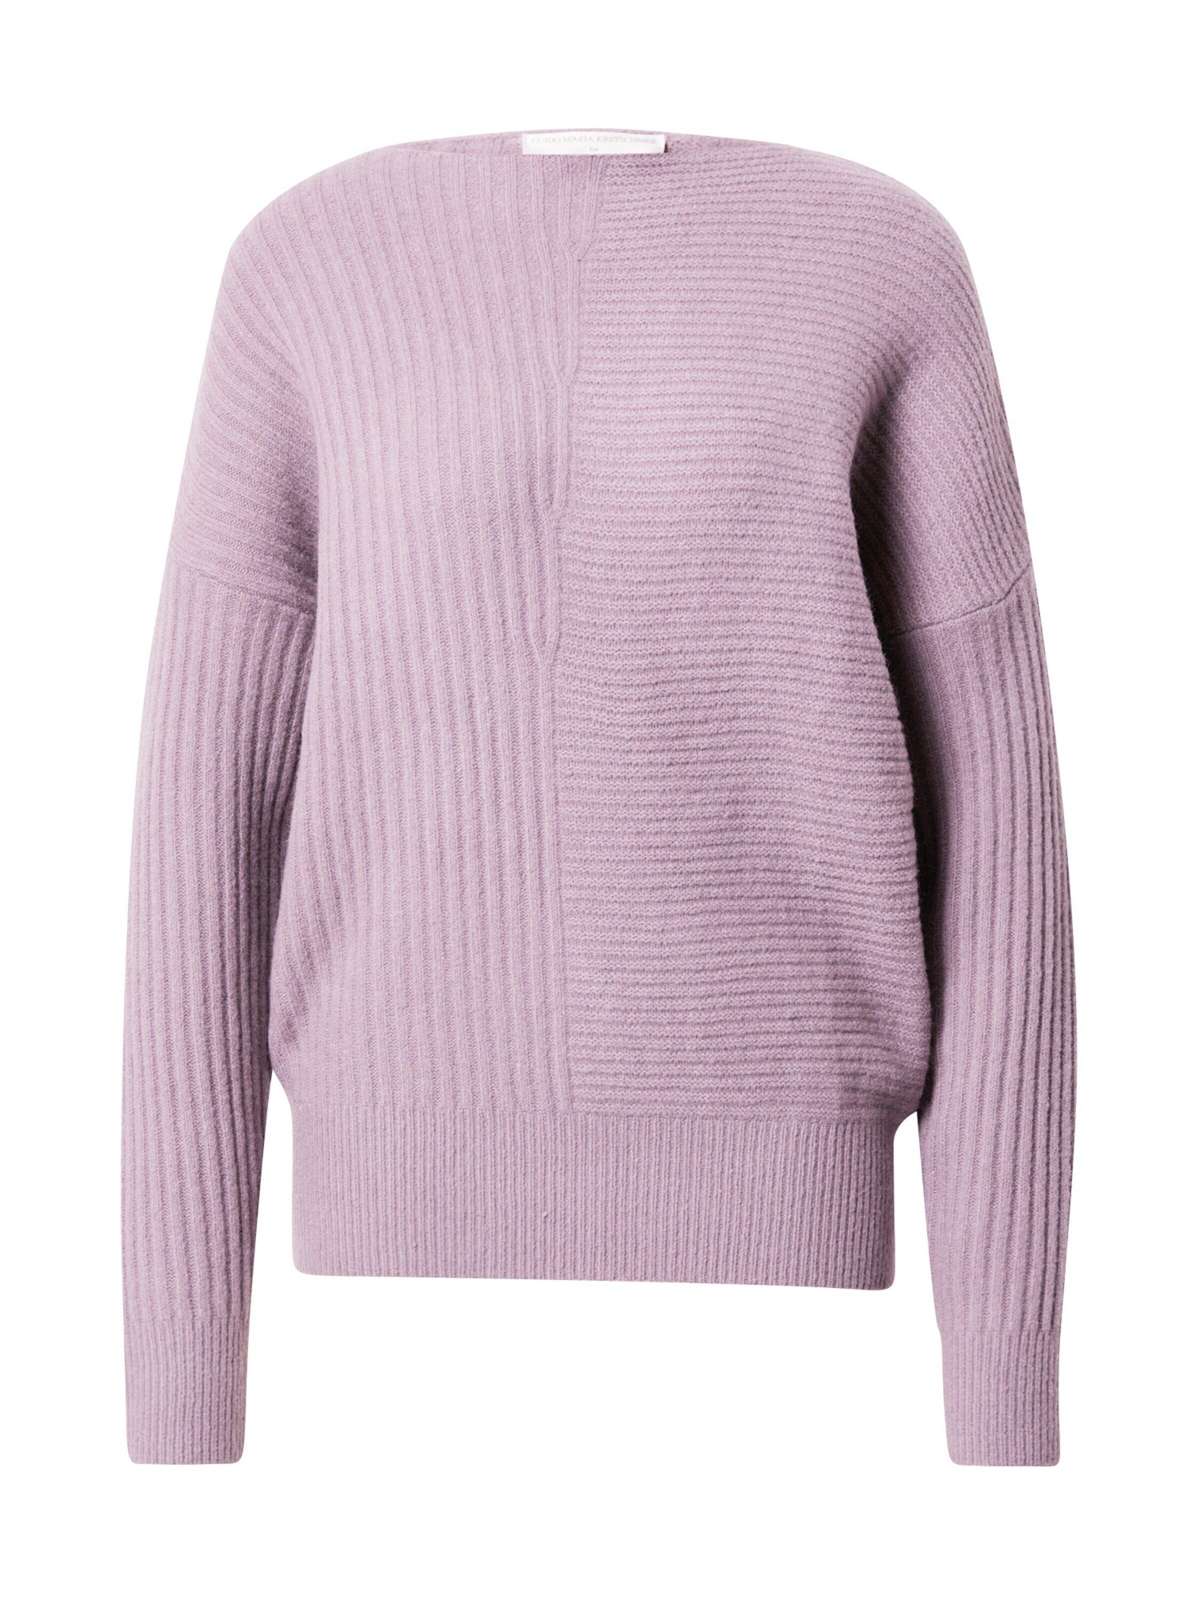 Вязаный свитер Франка (1 шт.) однотонный/без деталей